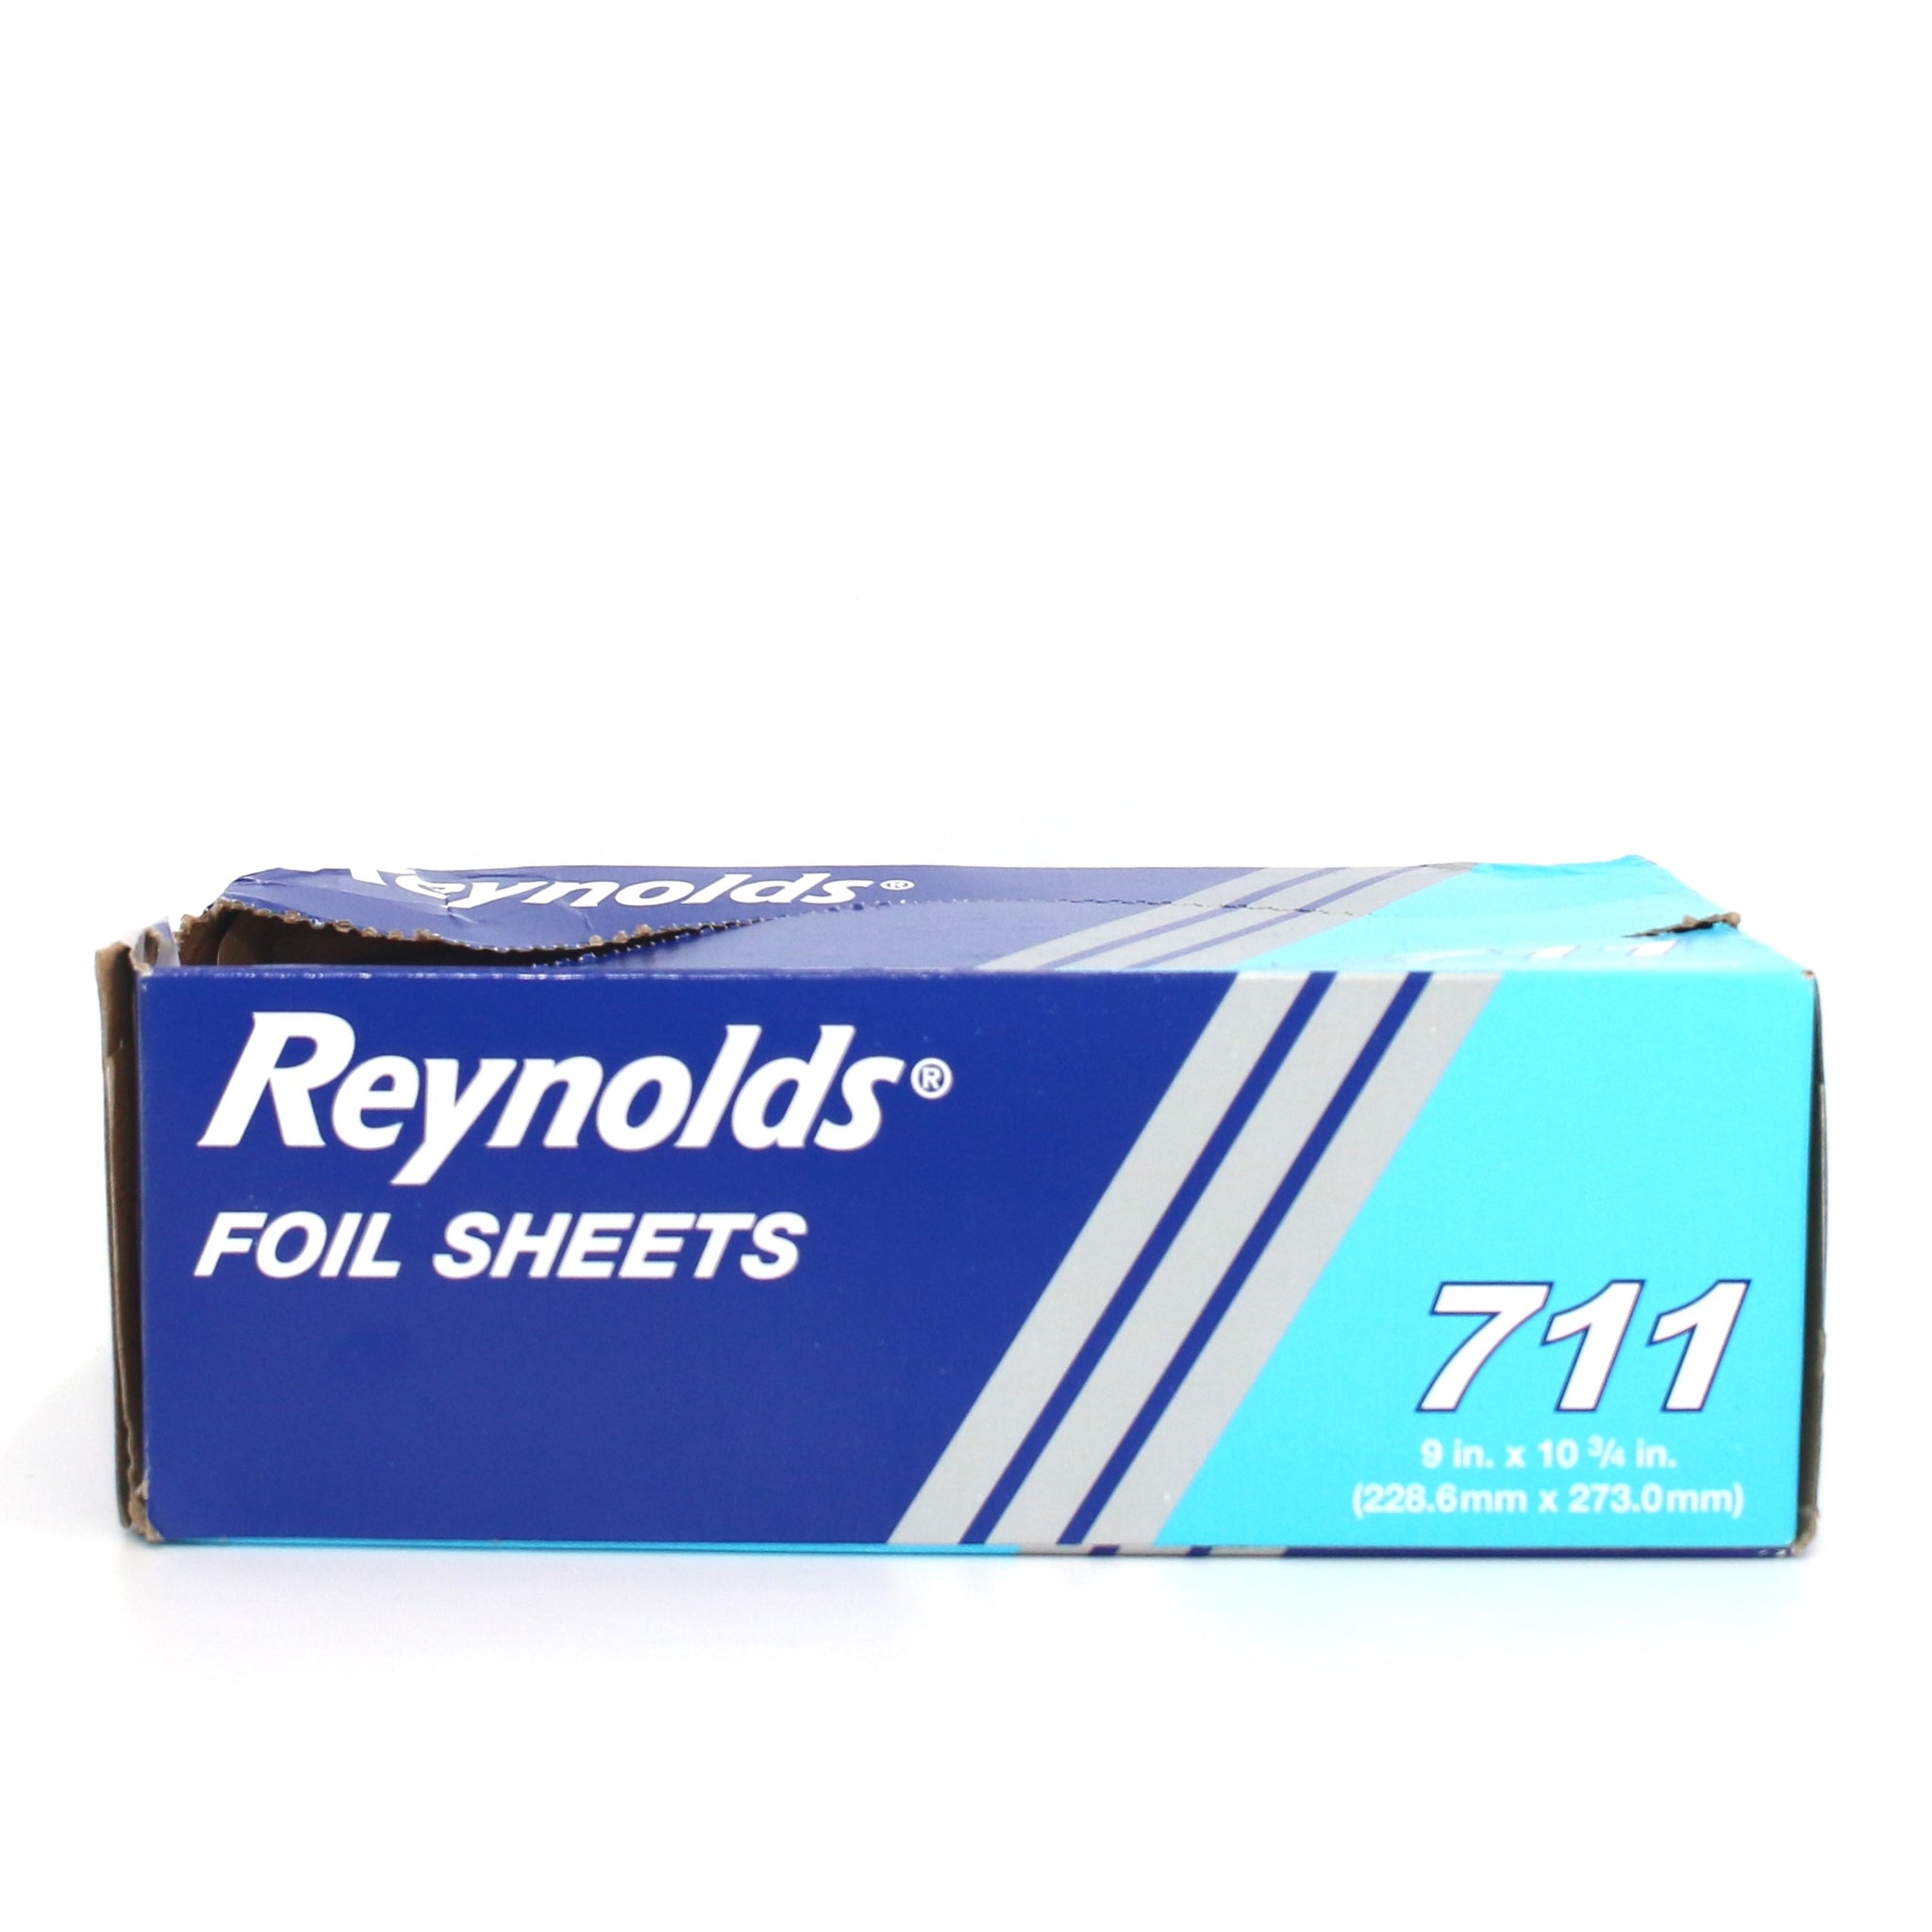 REYNOLDS Foil Sheets 711 9 in x 10 3/4 in